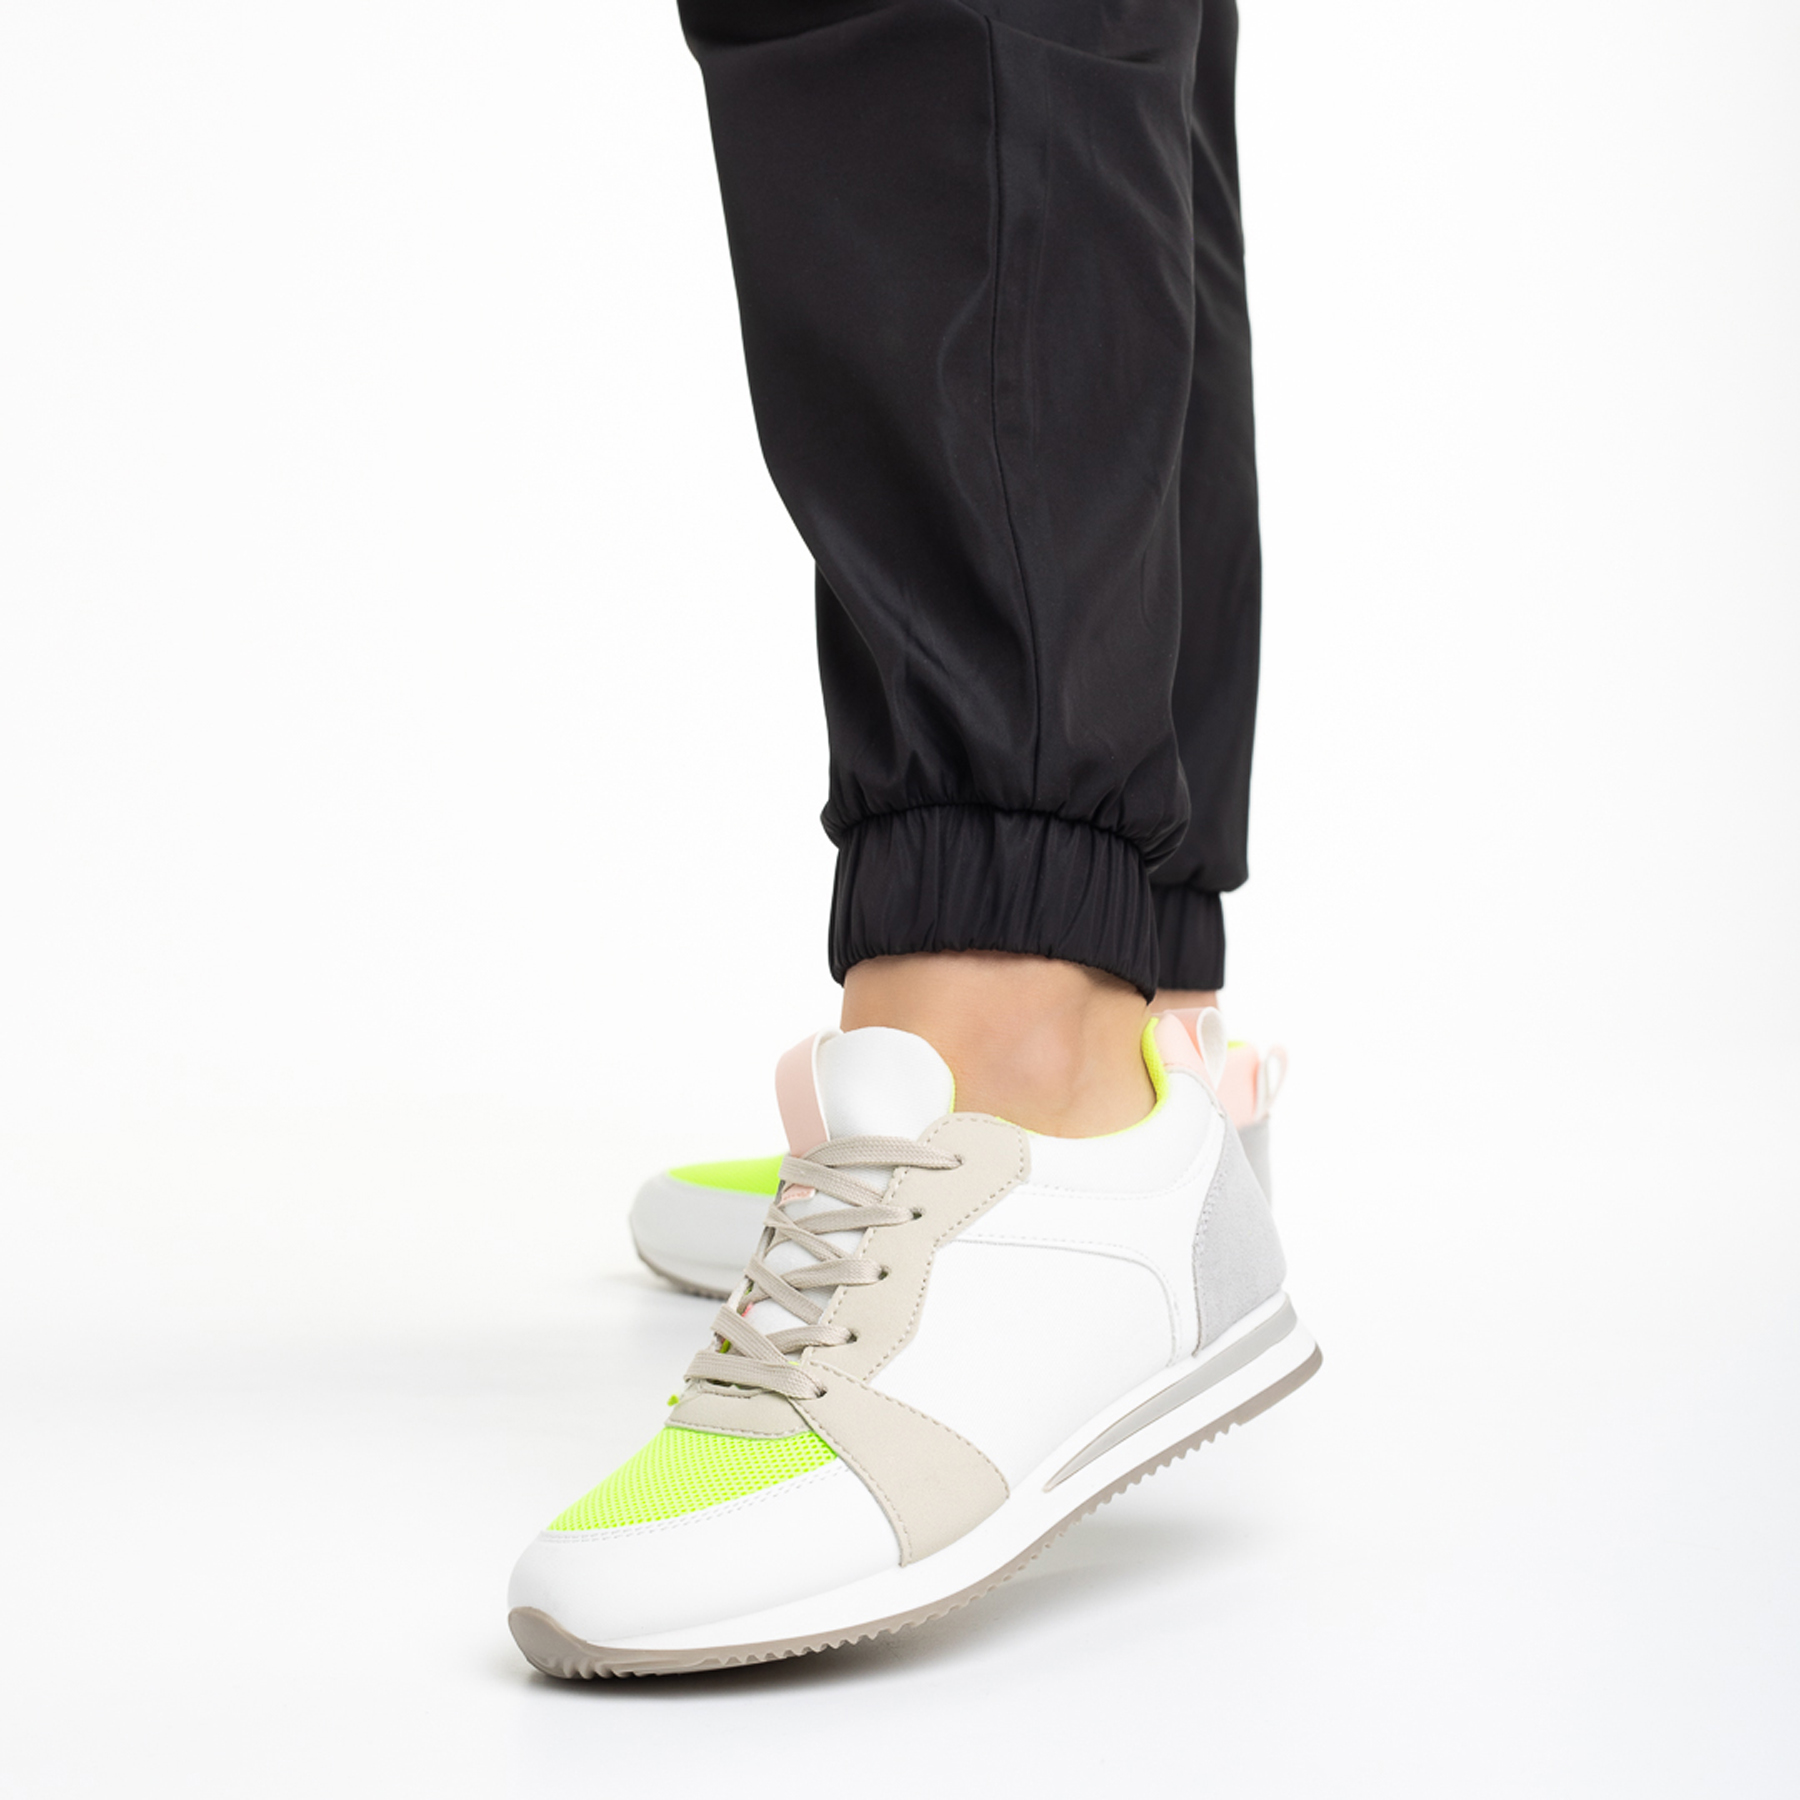 Дамски спортни обувки  бели със зелено от еко кожа и текстилен материал  Clarita, 3 - Kalapod.bg